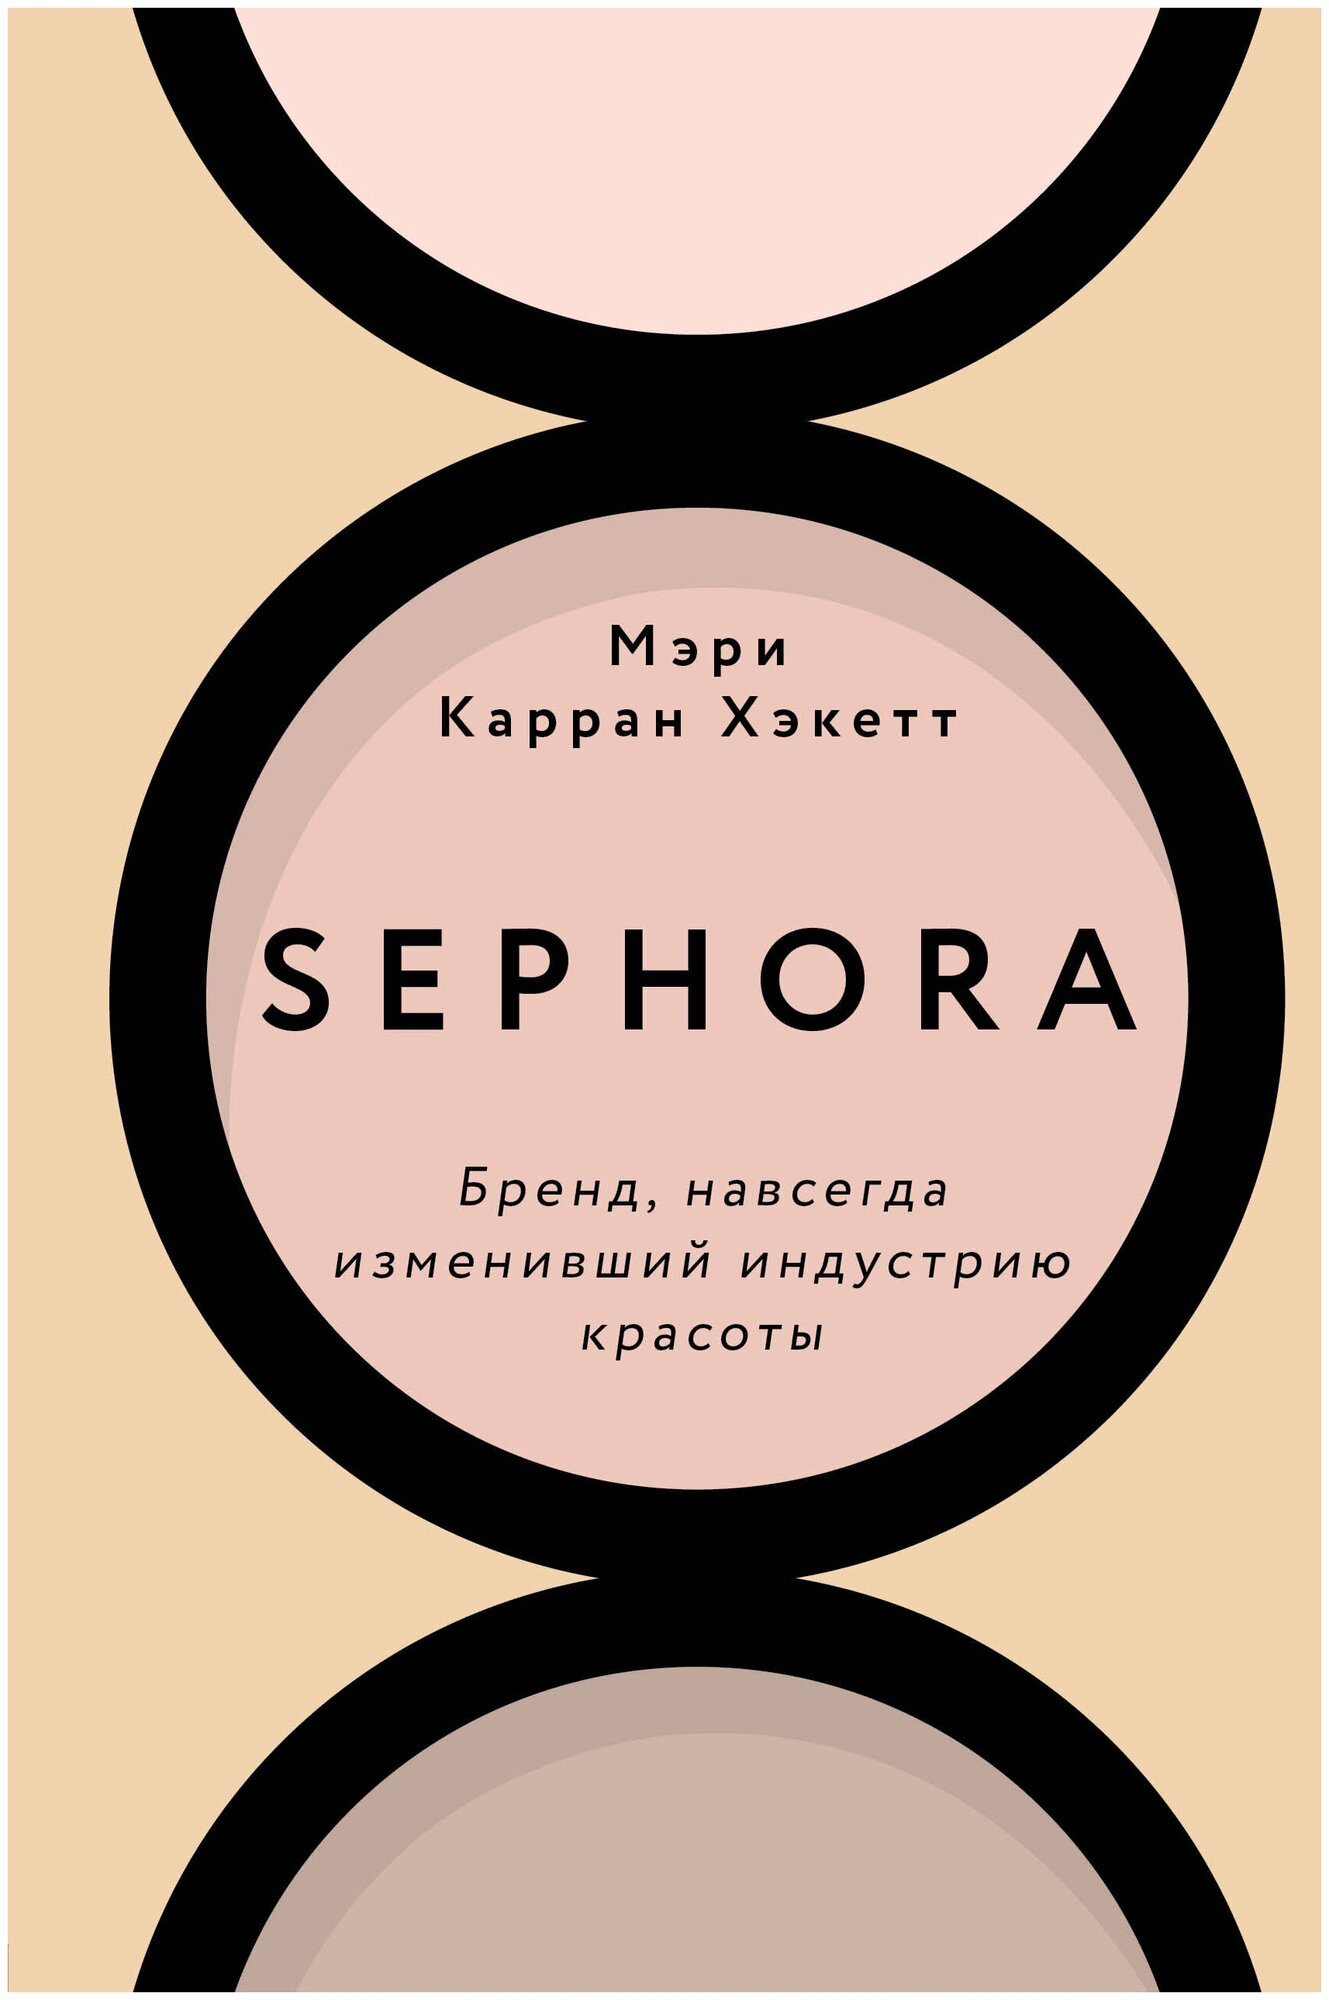 Sephora. Бренд, навсегда изменивший индустрию красоты - фото №17